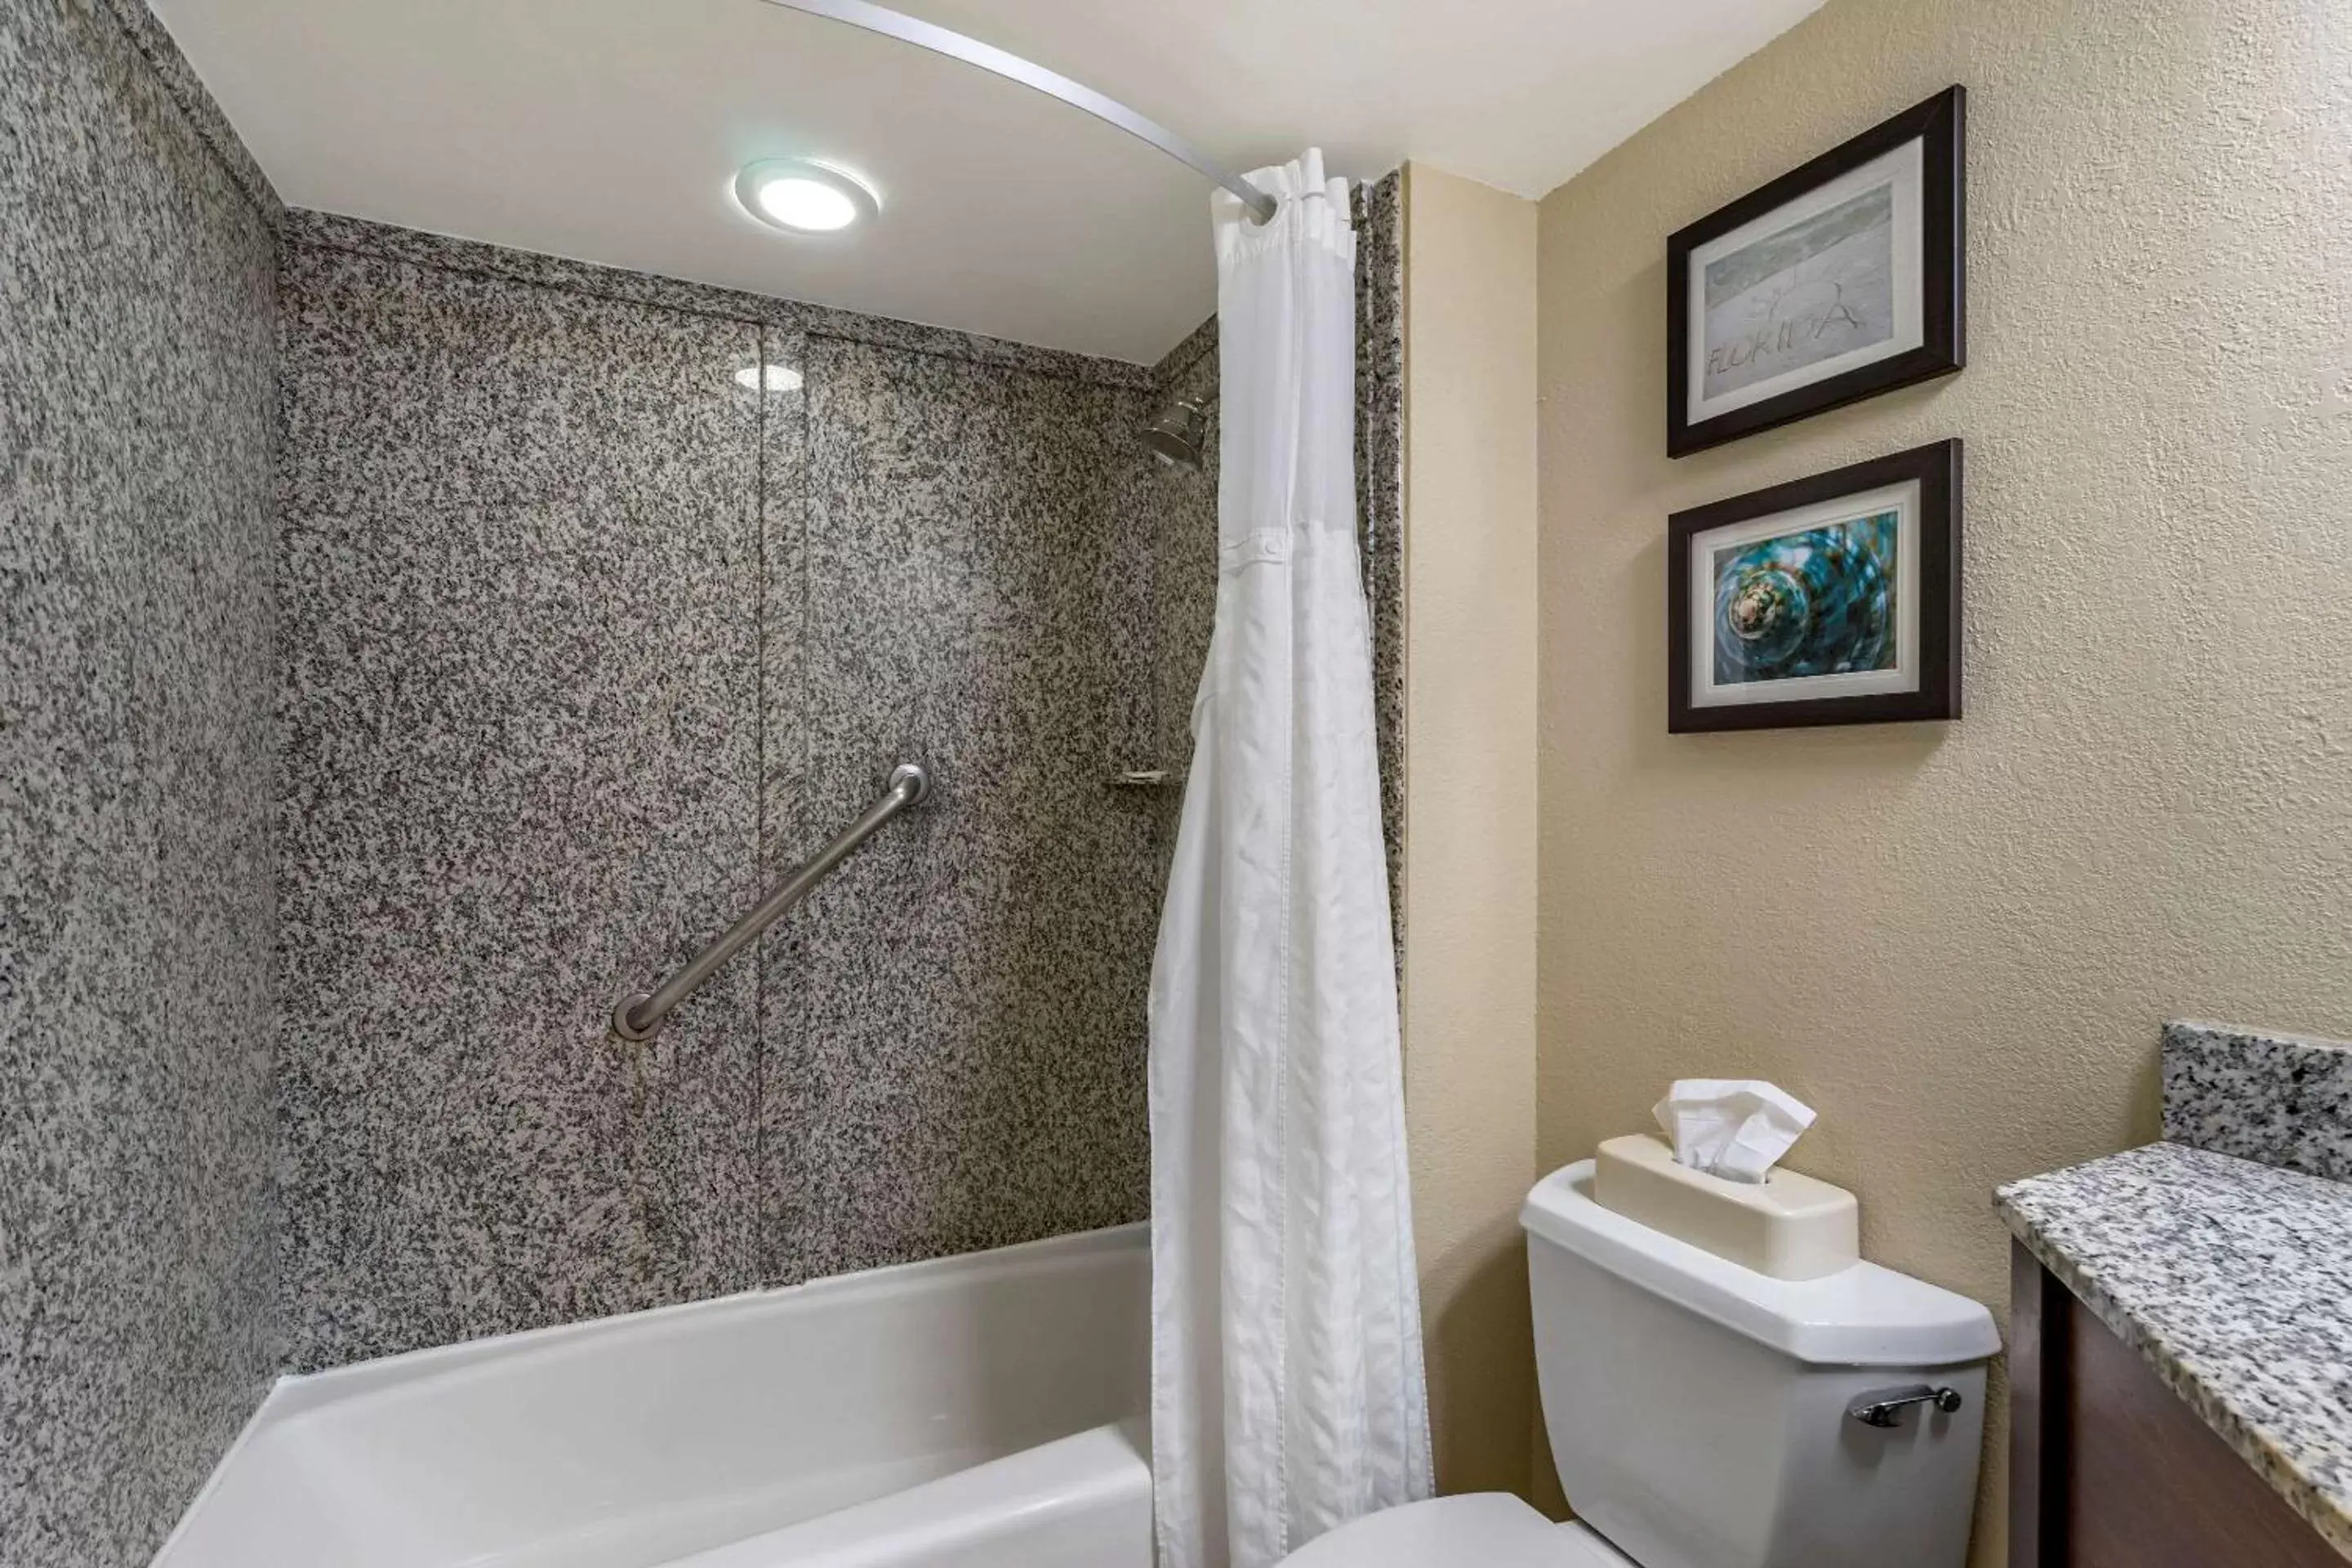 Bedroom, Bathroom in Comfort Inn & Suites St Pete - Clearwater International Airport